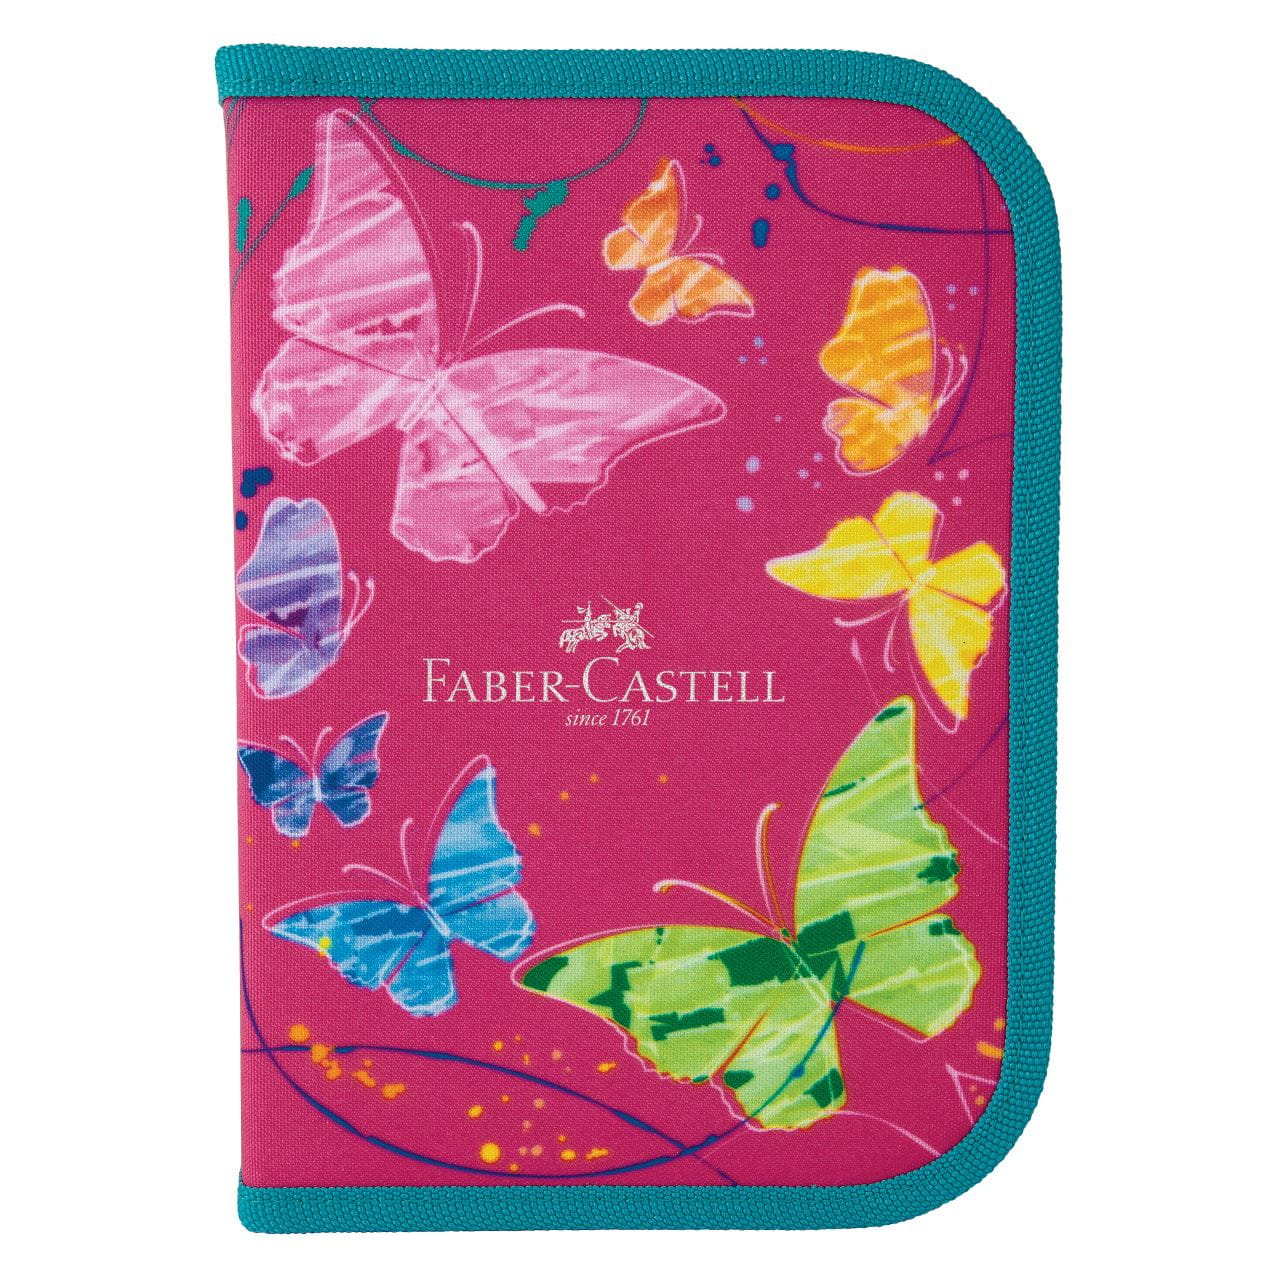 Faber-Castell - Estojo de Nylon Borboleta Rosa